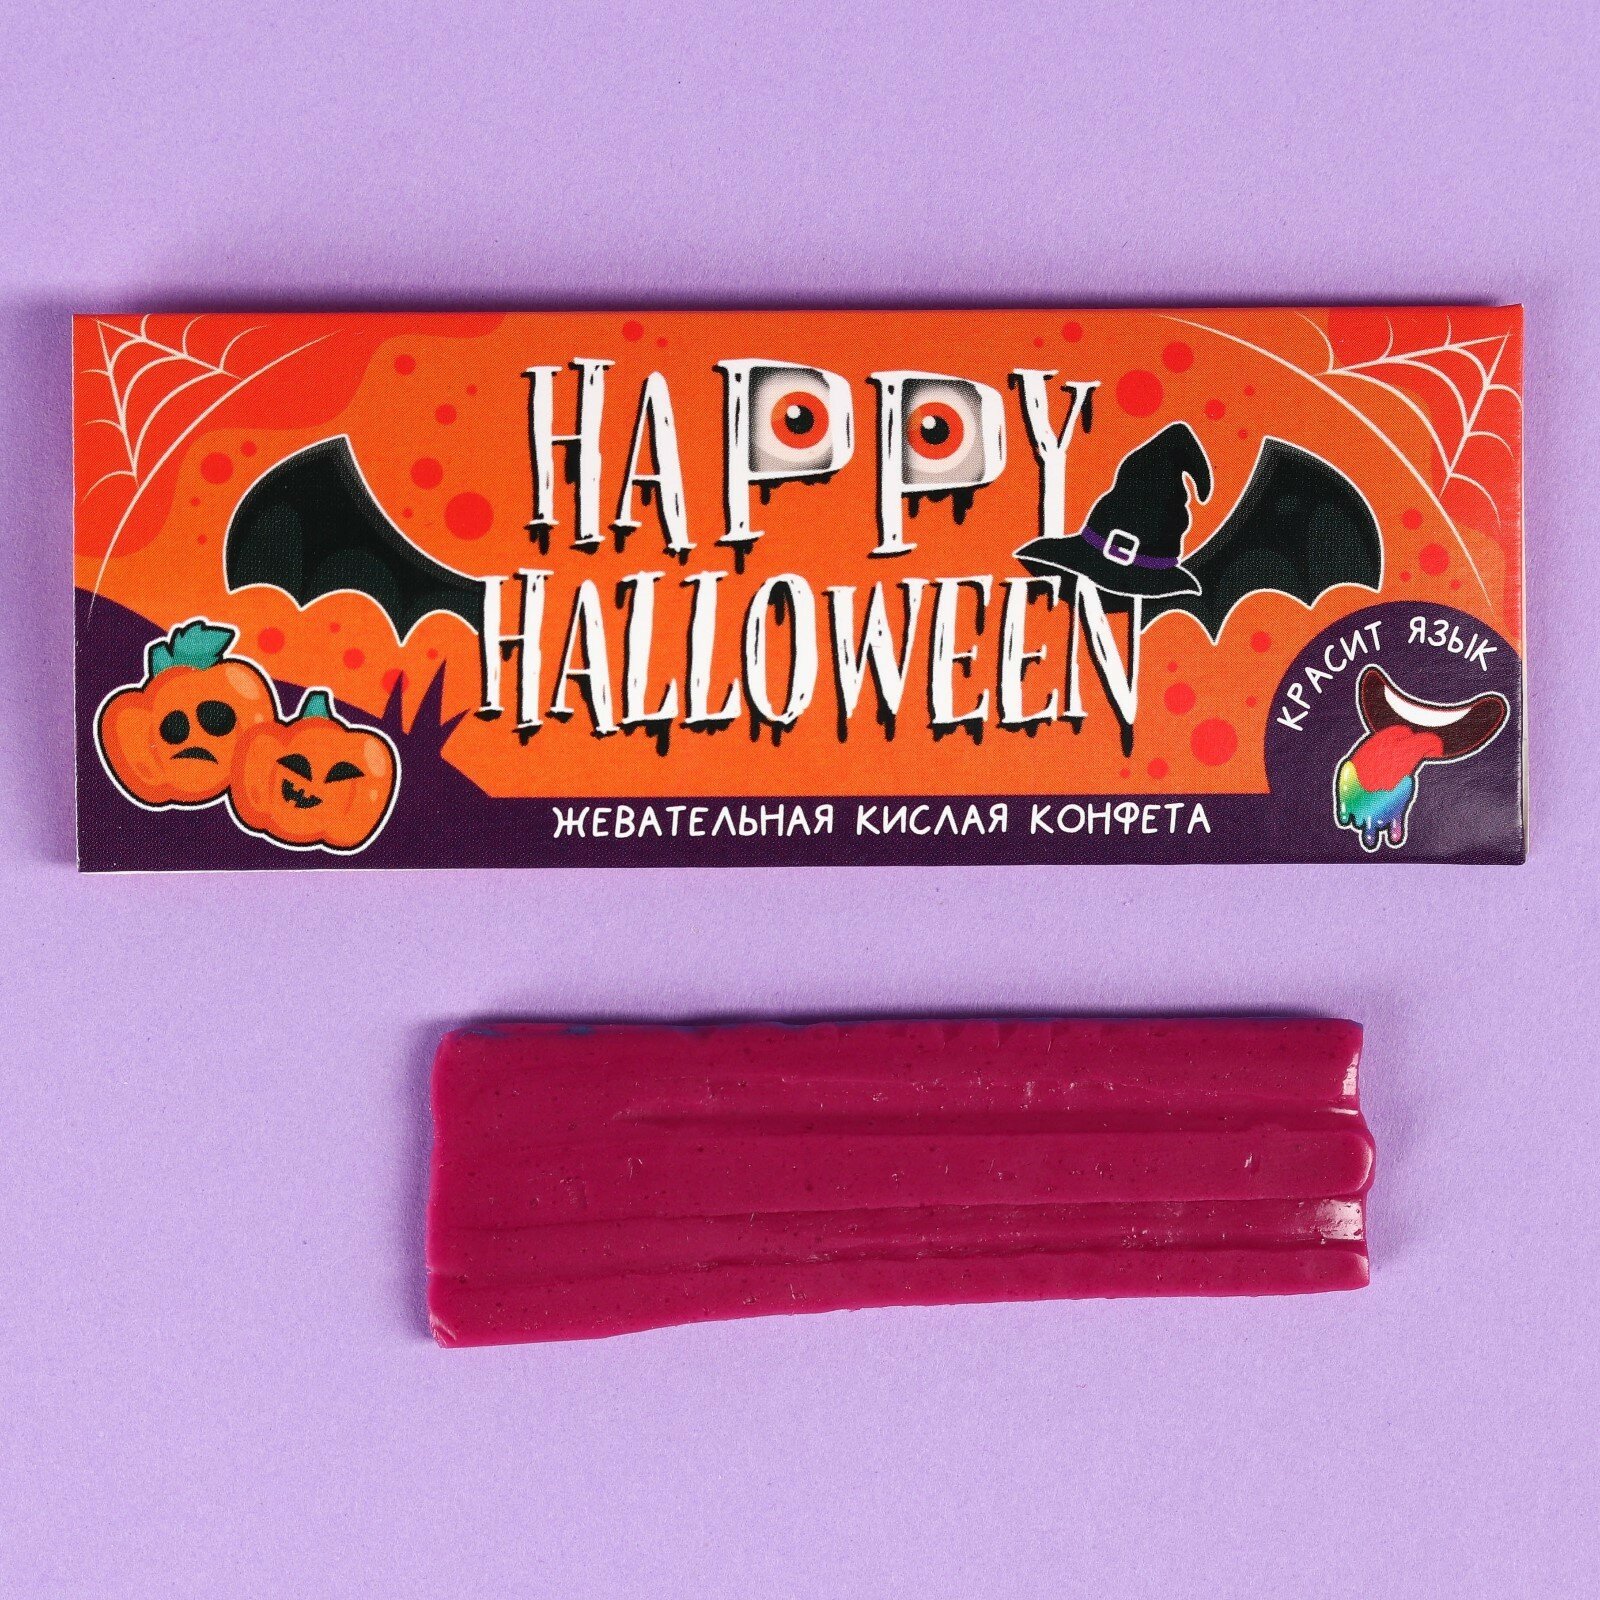 Кислая жевательная конфета "Happy Halloween" красящая язык, 10 г. - фотография № 1